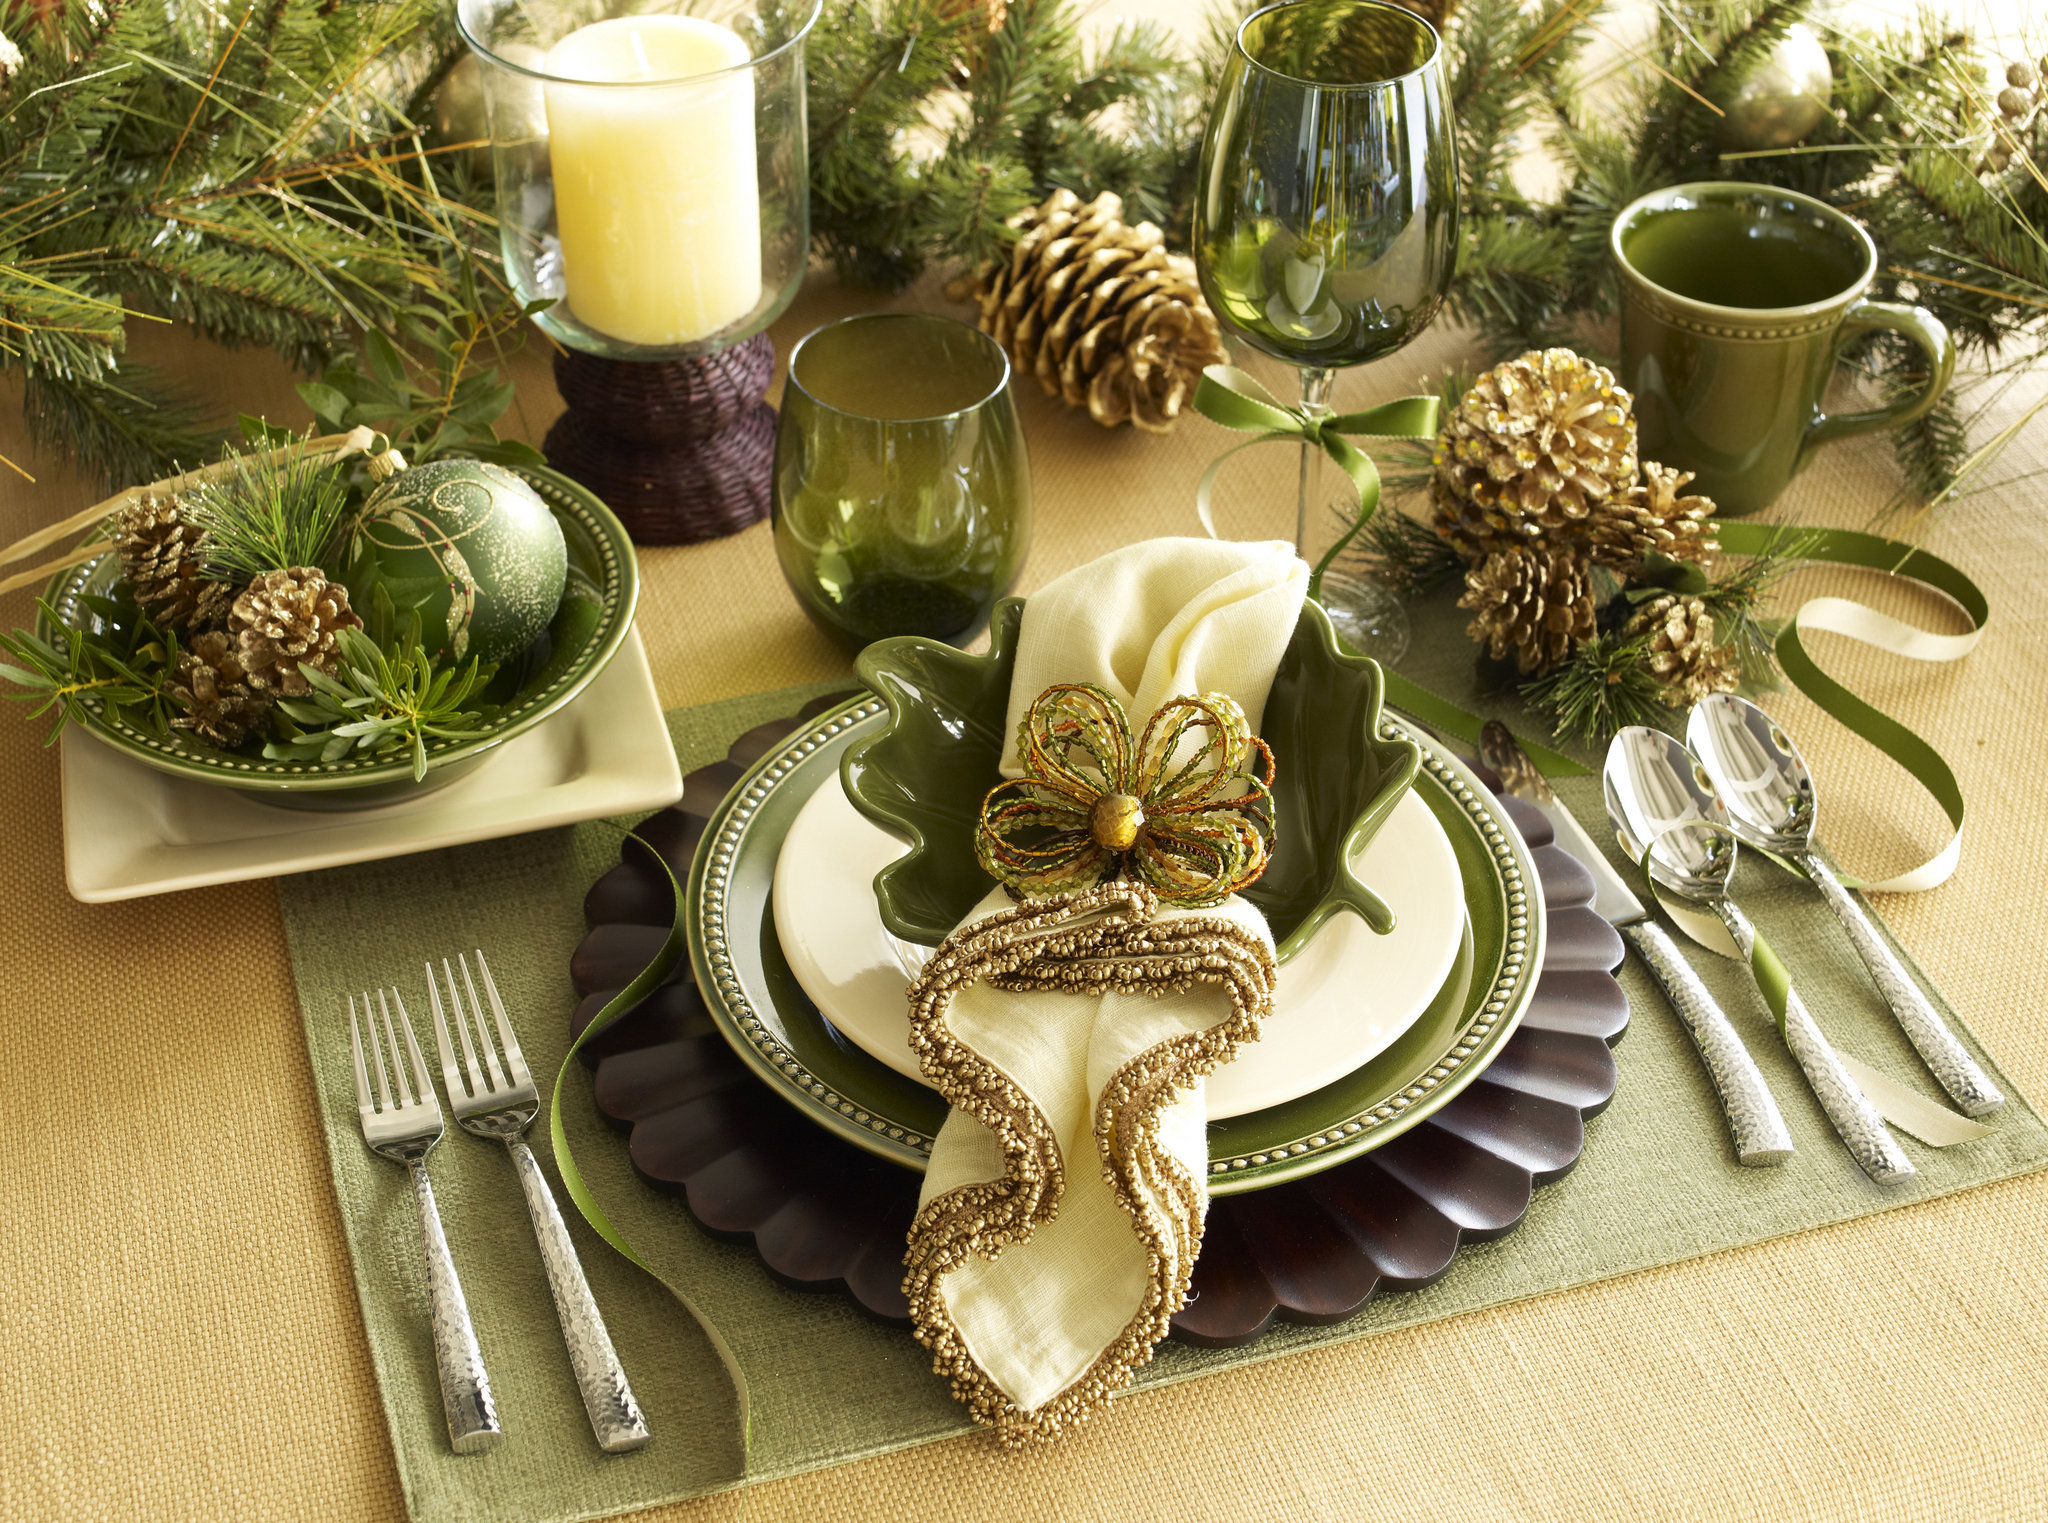 Эффектное оформление яблок для новогоднего стола Способы оформления подачи яблок к столу, более простой способ – украшение кремом, декорирование фруктов, более сложные варианты, требующие резки, удивительный цветок, распустившийся на праздничном столе, но